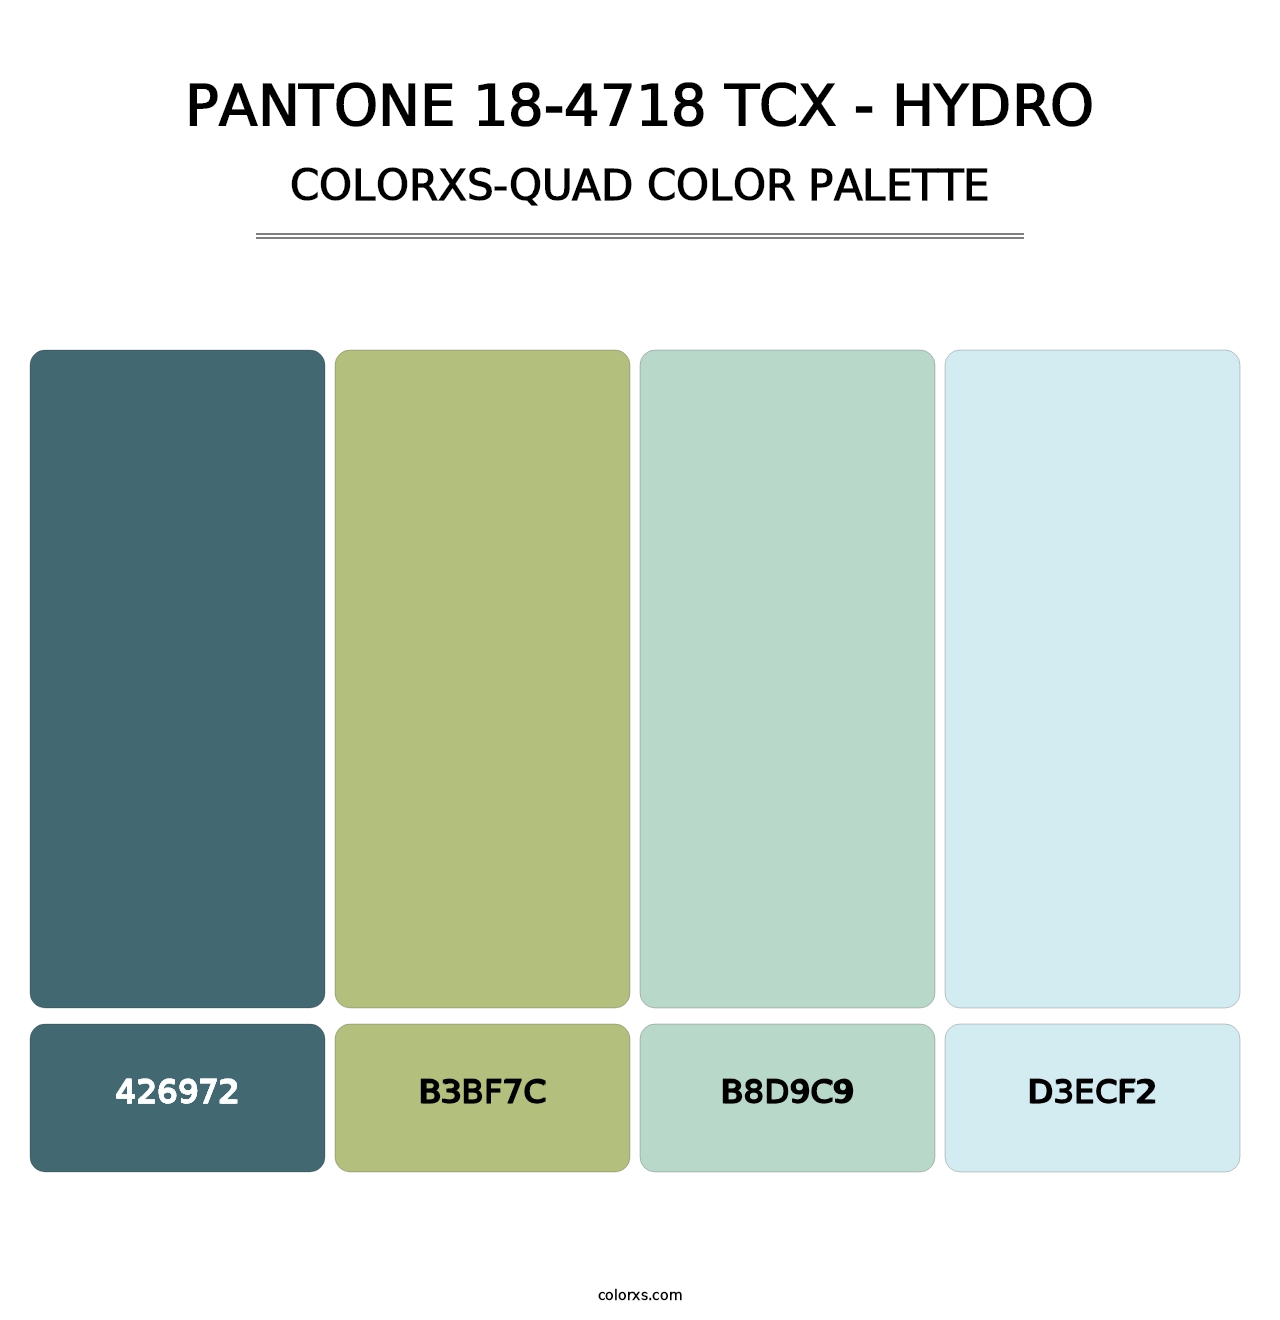 PANTONE 18-4718 TCX - Hydro - Colorxs Quad Palette